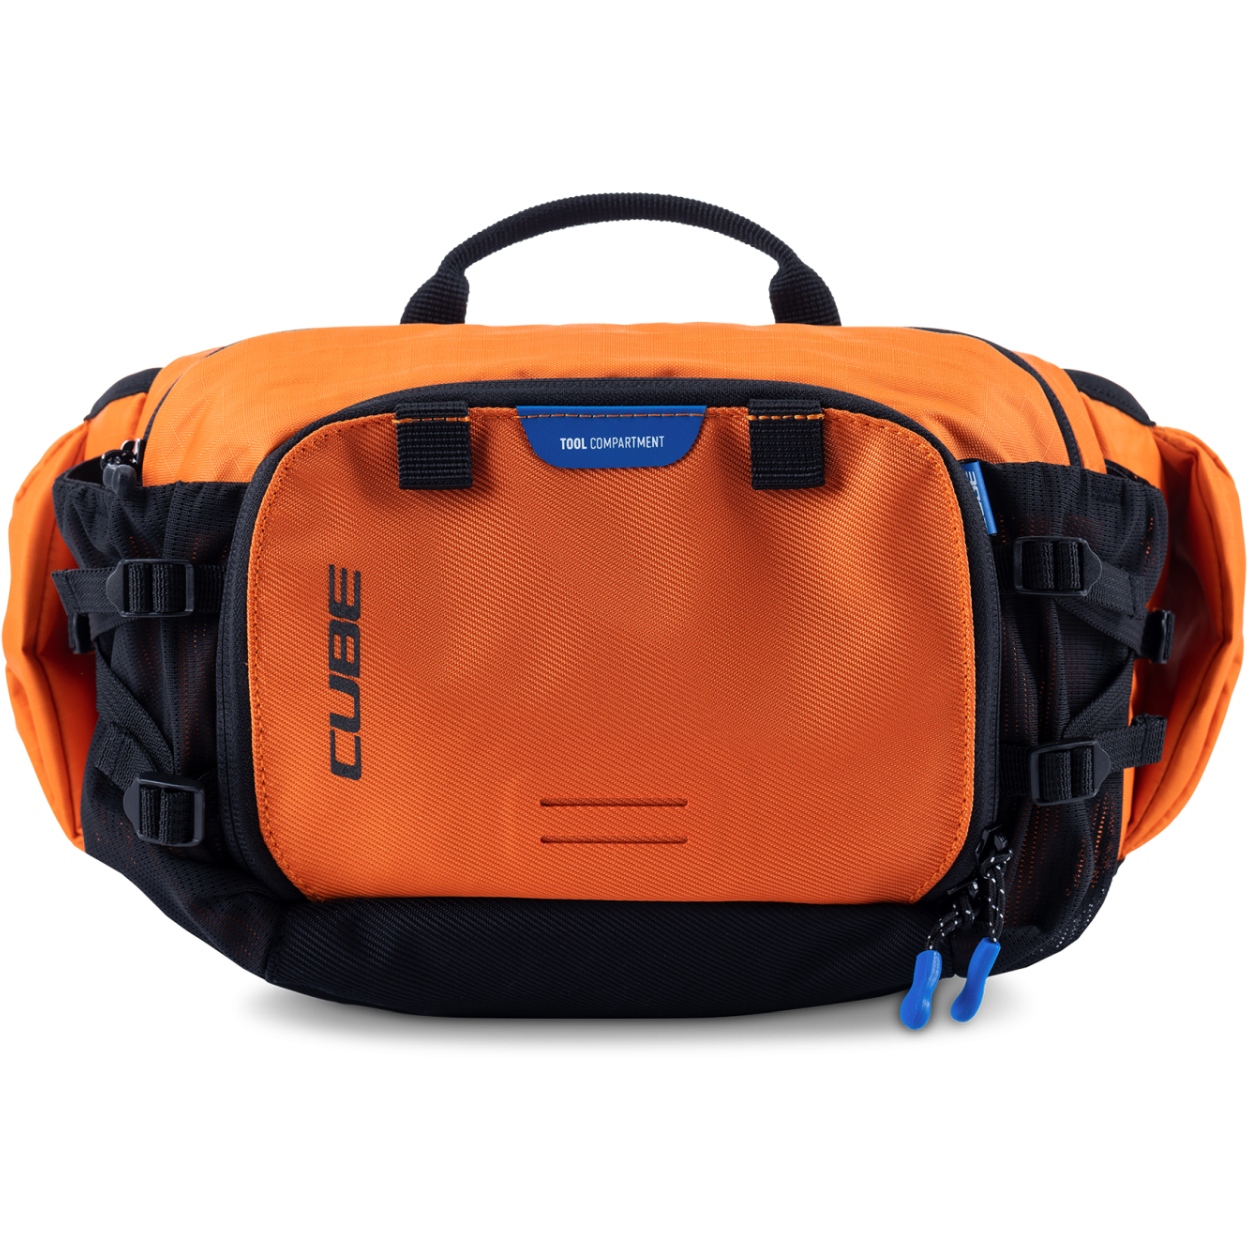 Produktbild von CUBE VERTEX 3L Hüfttasche - orange X Actionteam